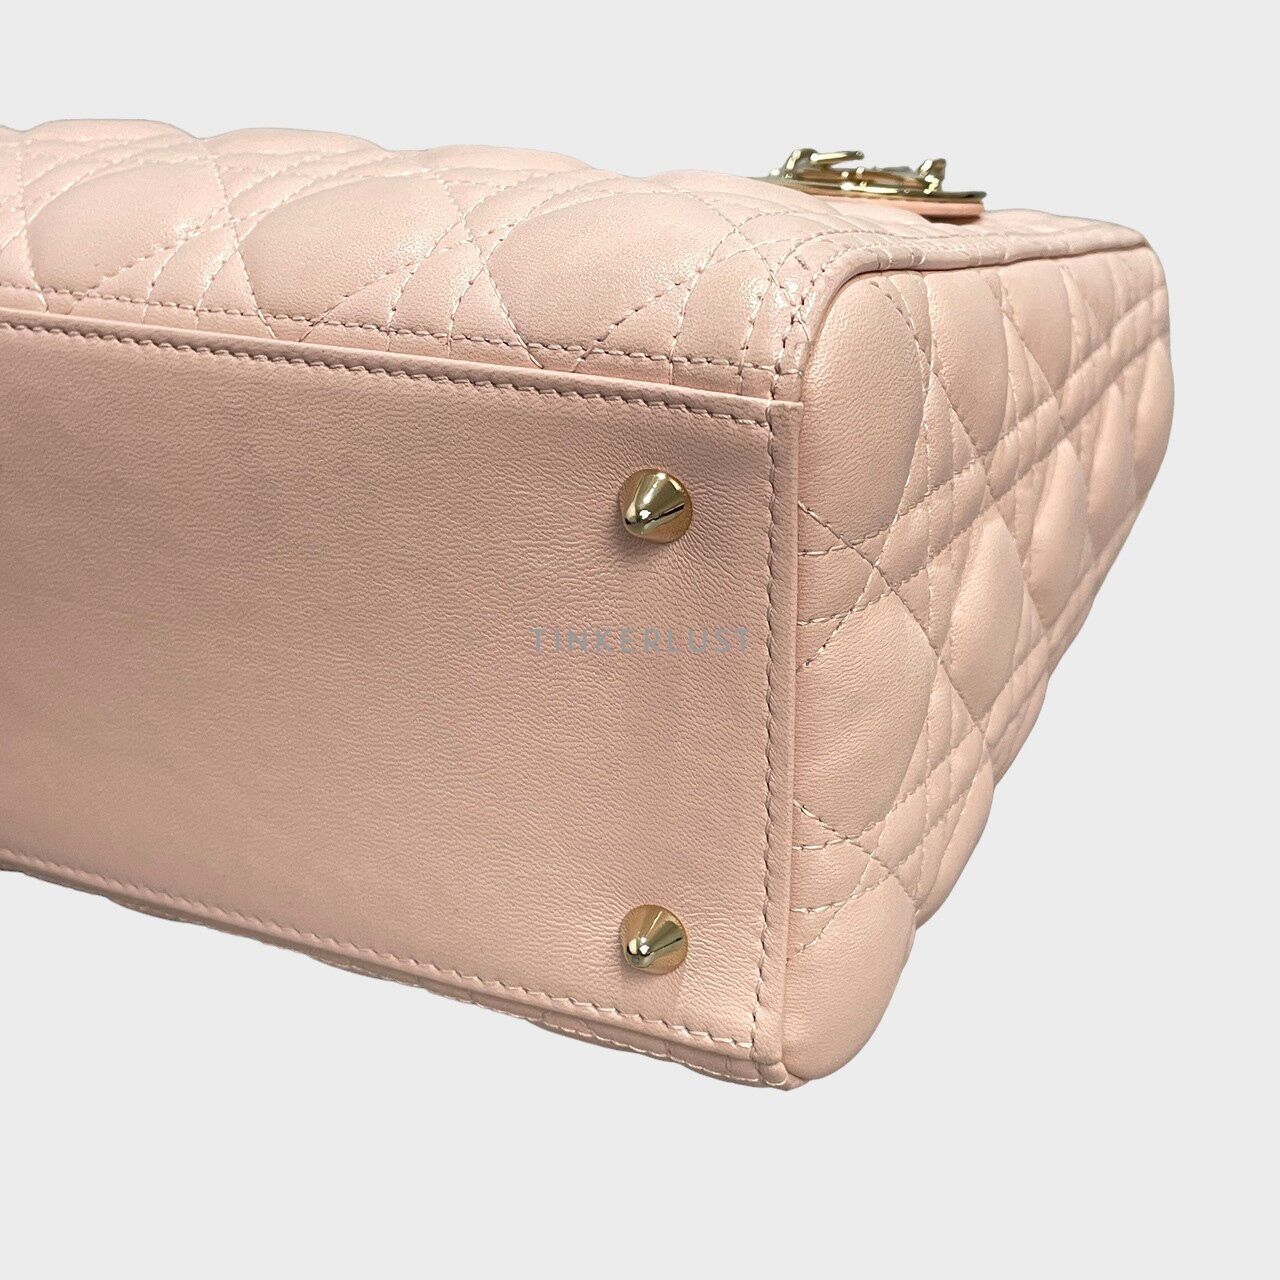 Christian Dior Lady Dior Medium Pink GHW Satchel Bag